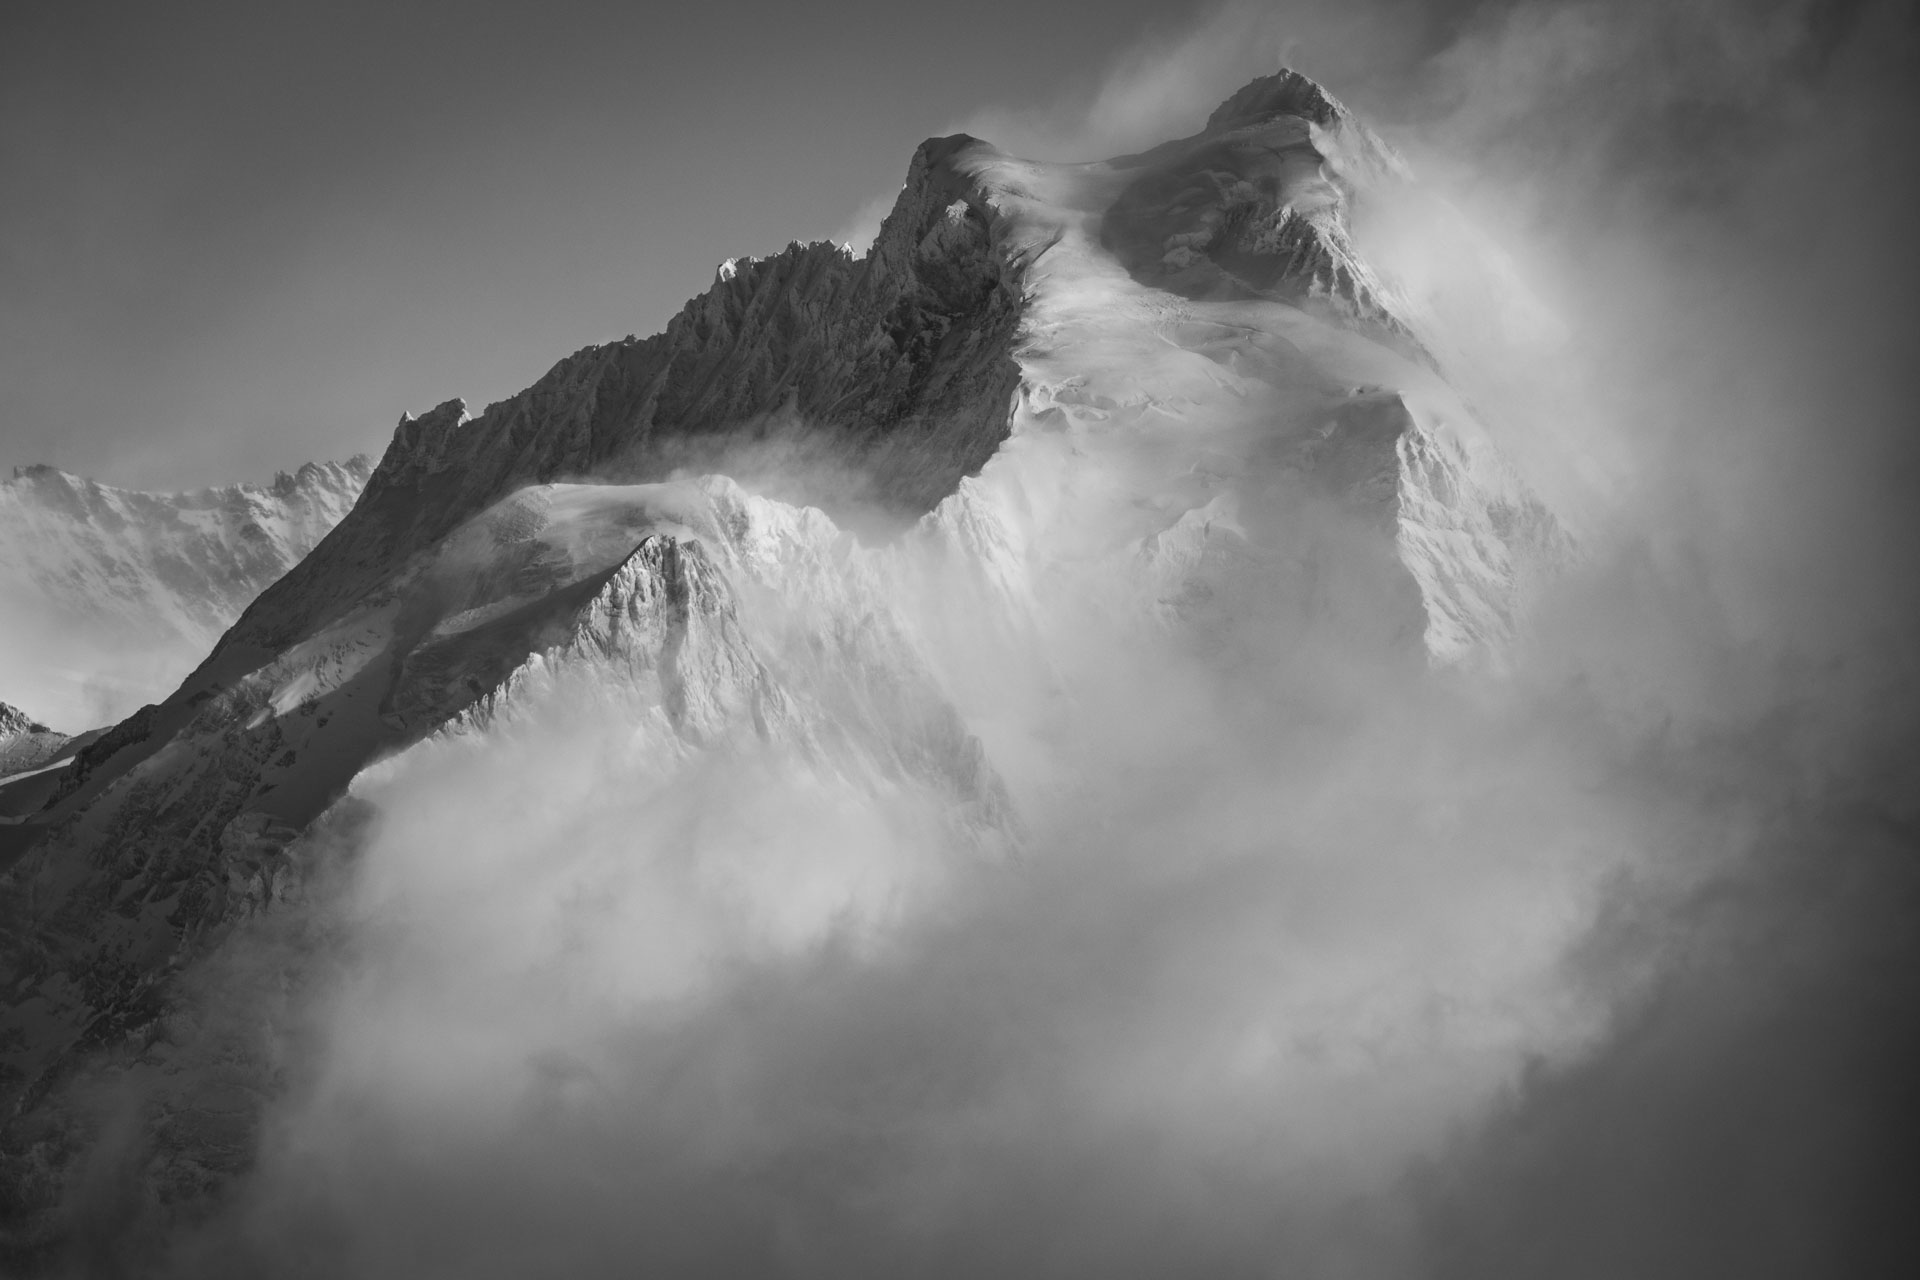 Jungfrau- sommet des alpes Bernoises et massif montagneux dans une mer de nuages en noir et blanc